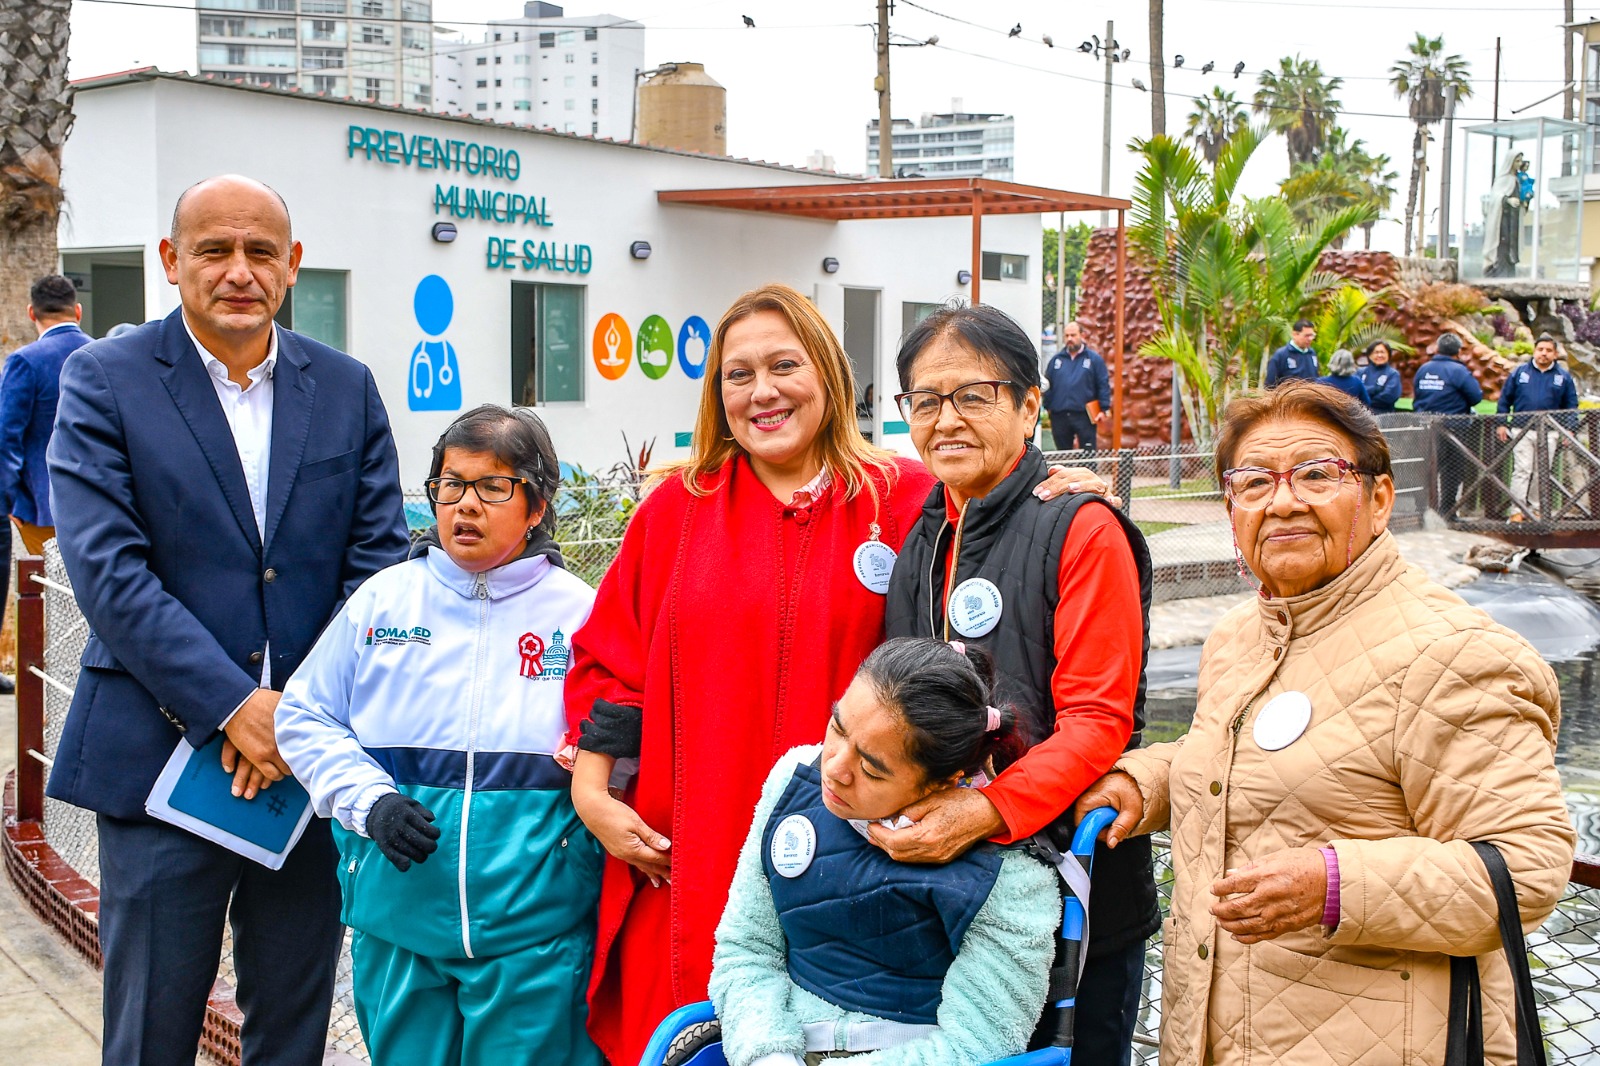 Barranco: Preventorio Municipal de Salud ya registra 225 atenciones